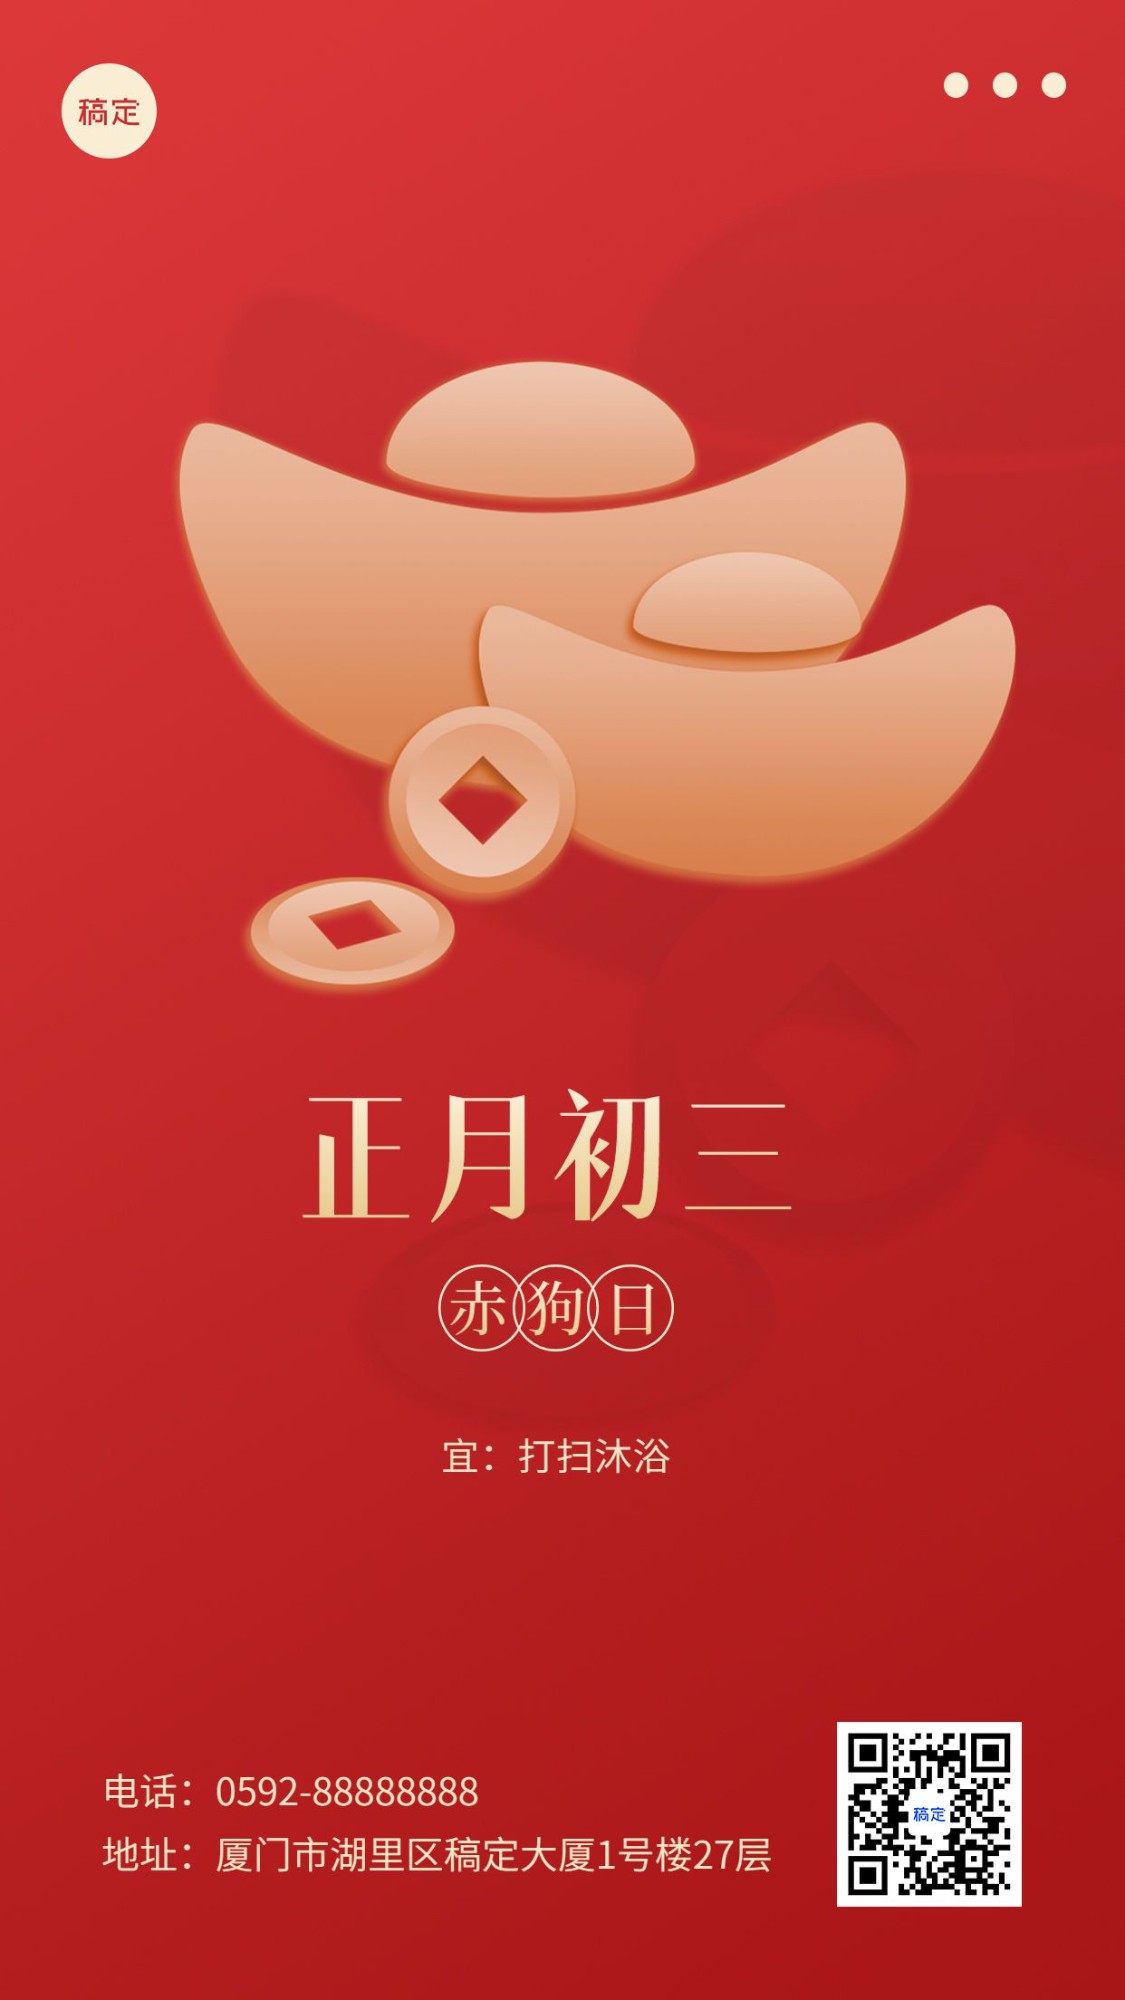 春节新年祝福正月初三简约排版套系手机海报